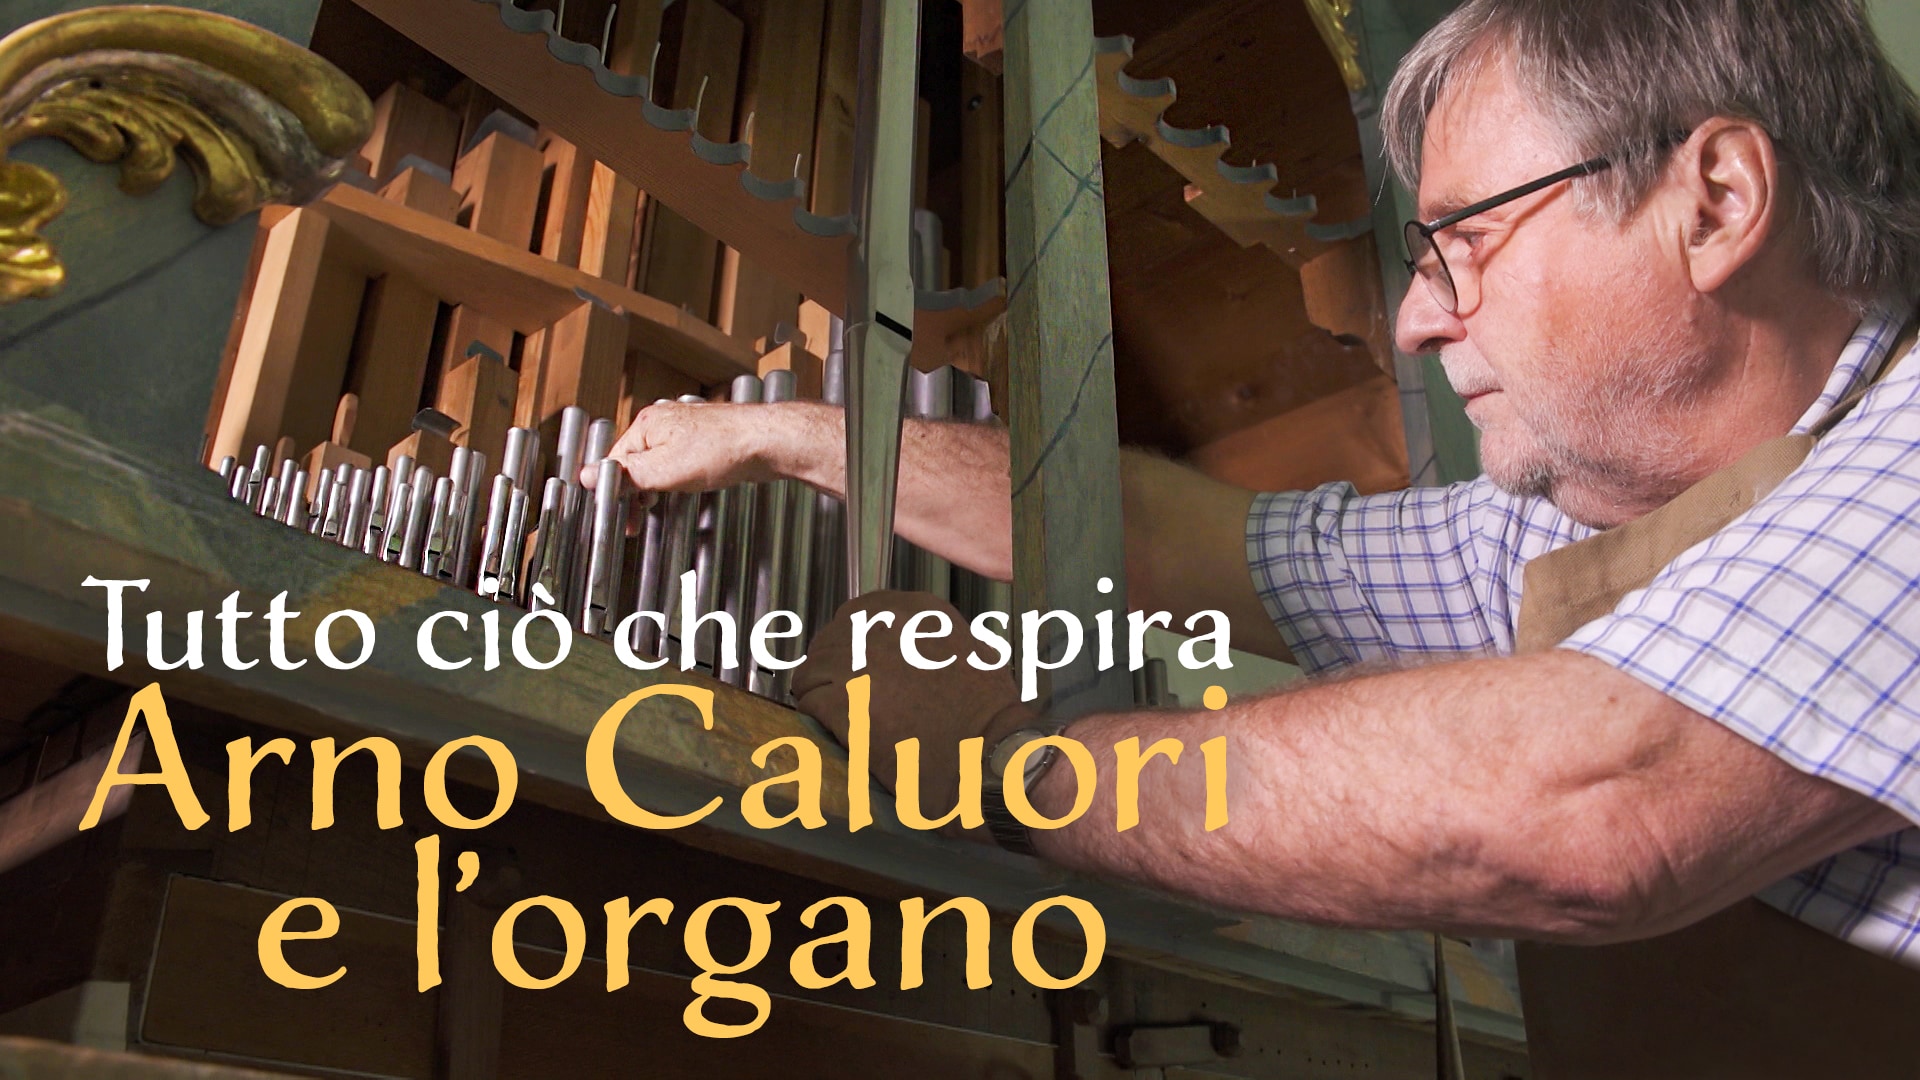 Tutto ciò che respira: Arno Caluori e l’organo